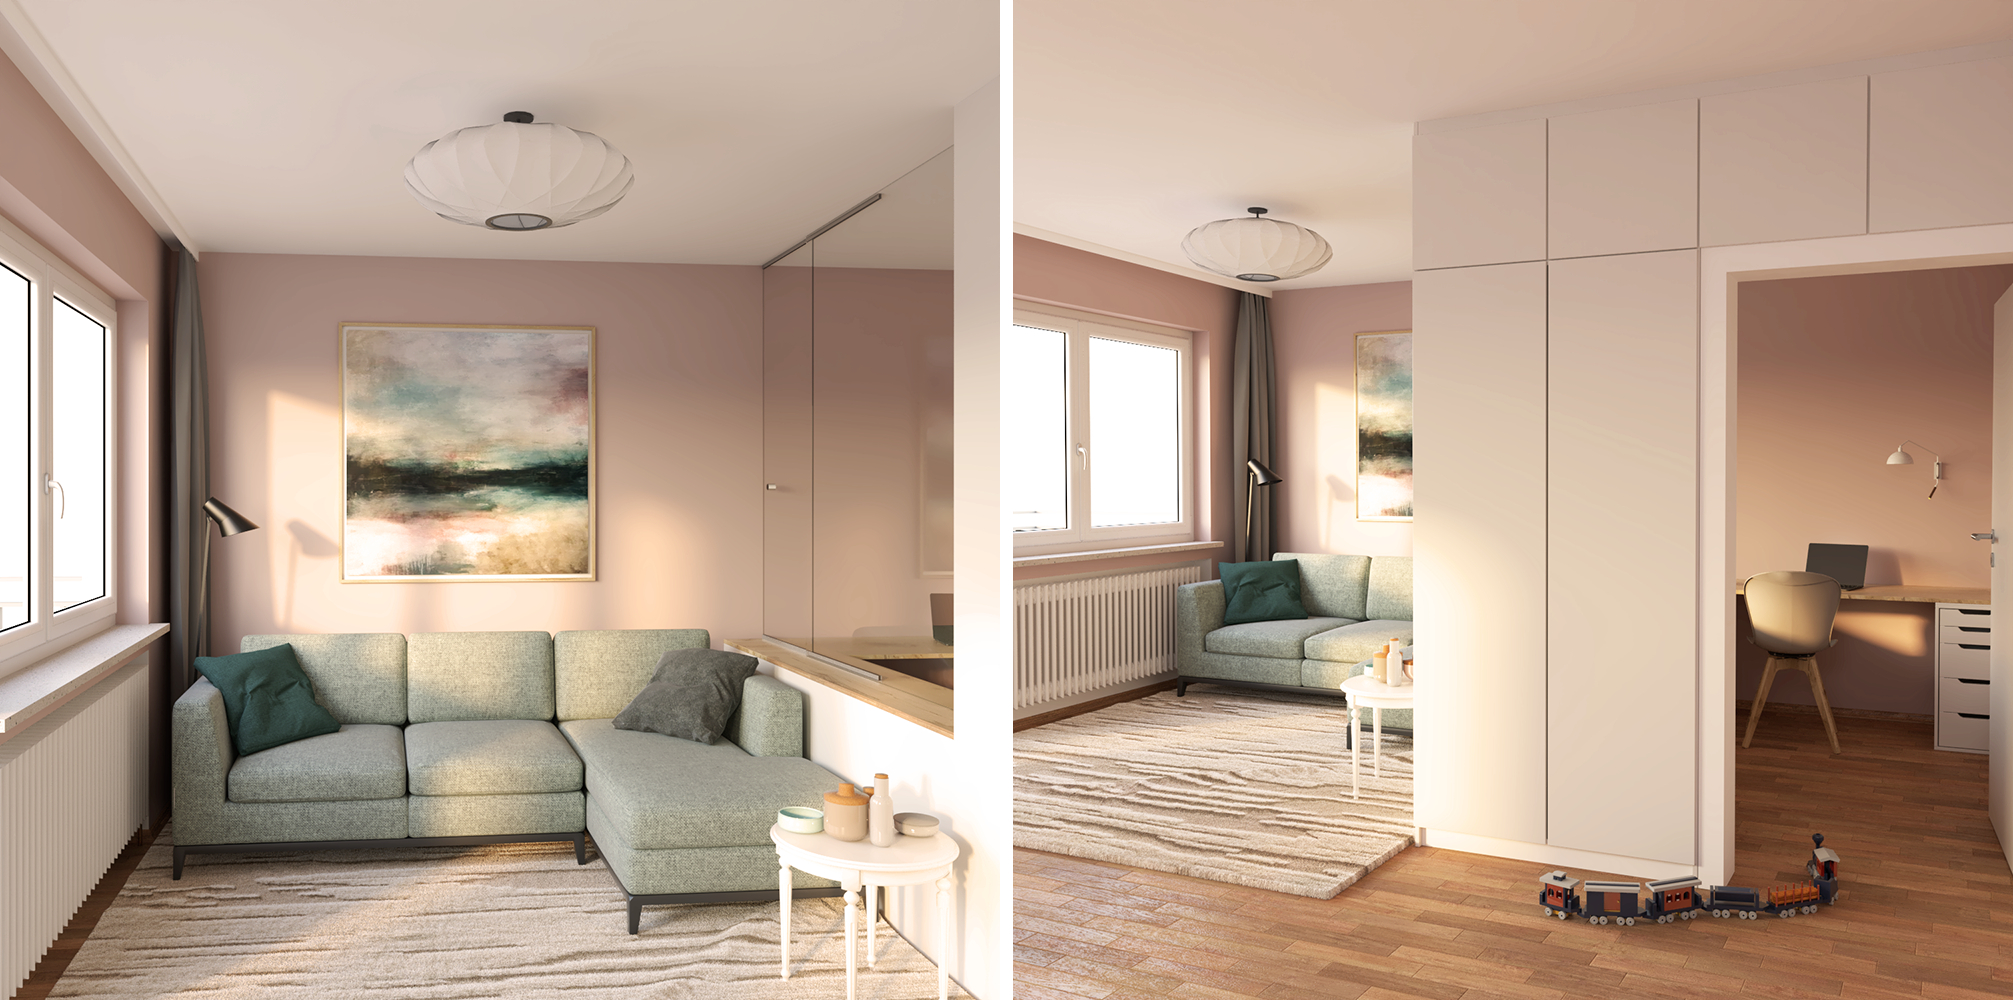 Kleines Wohnzimmer Einrichten Mit Ikea - Home-Office Als Raum Im Raum throughout Ikea Kleines Wohnzimmer